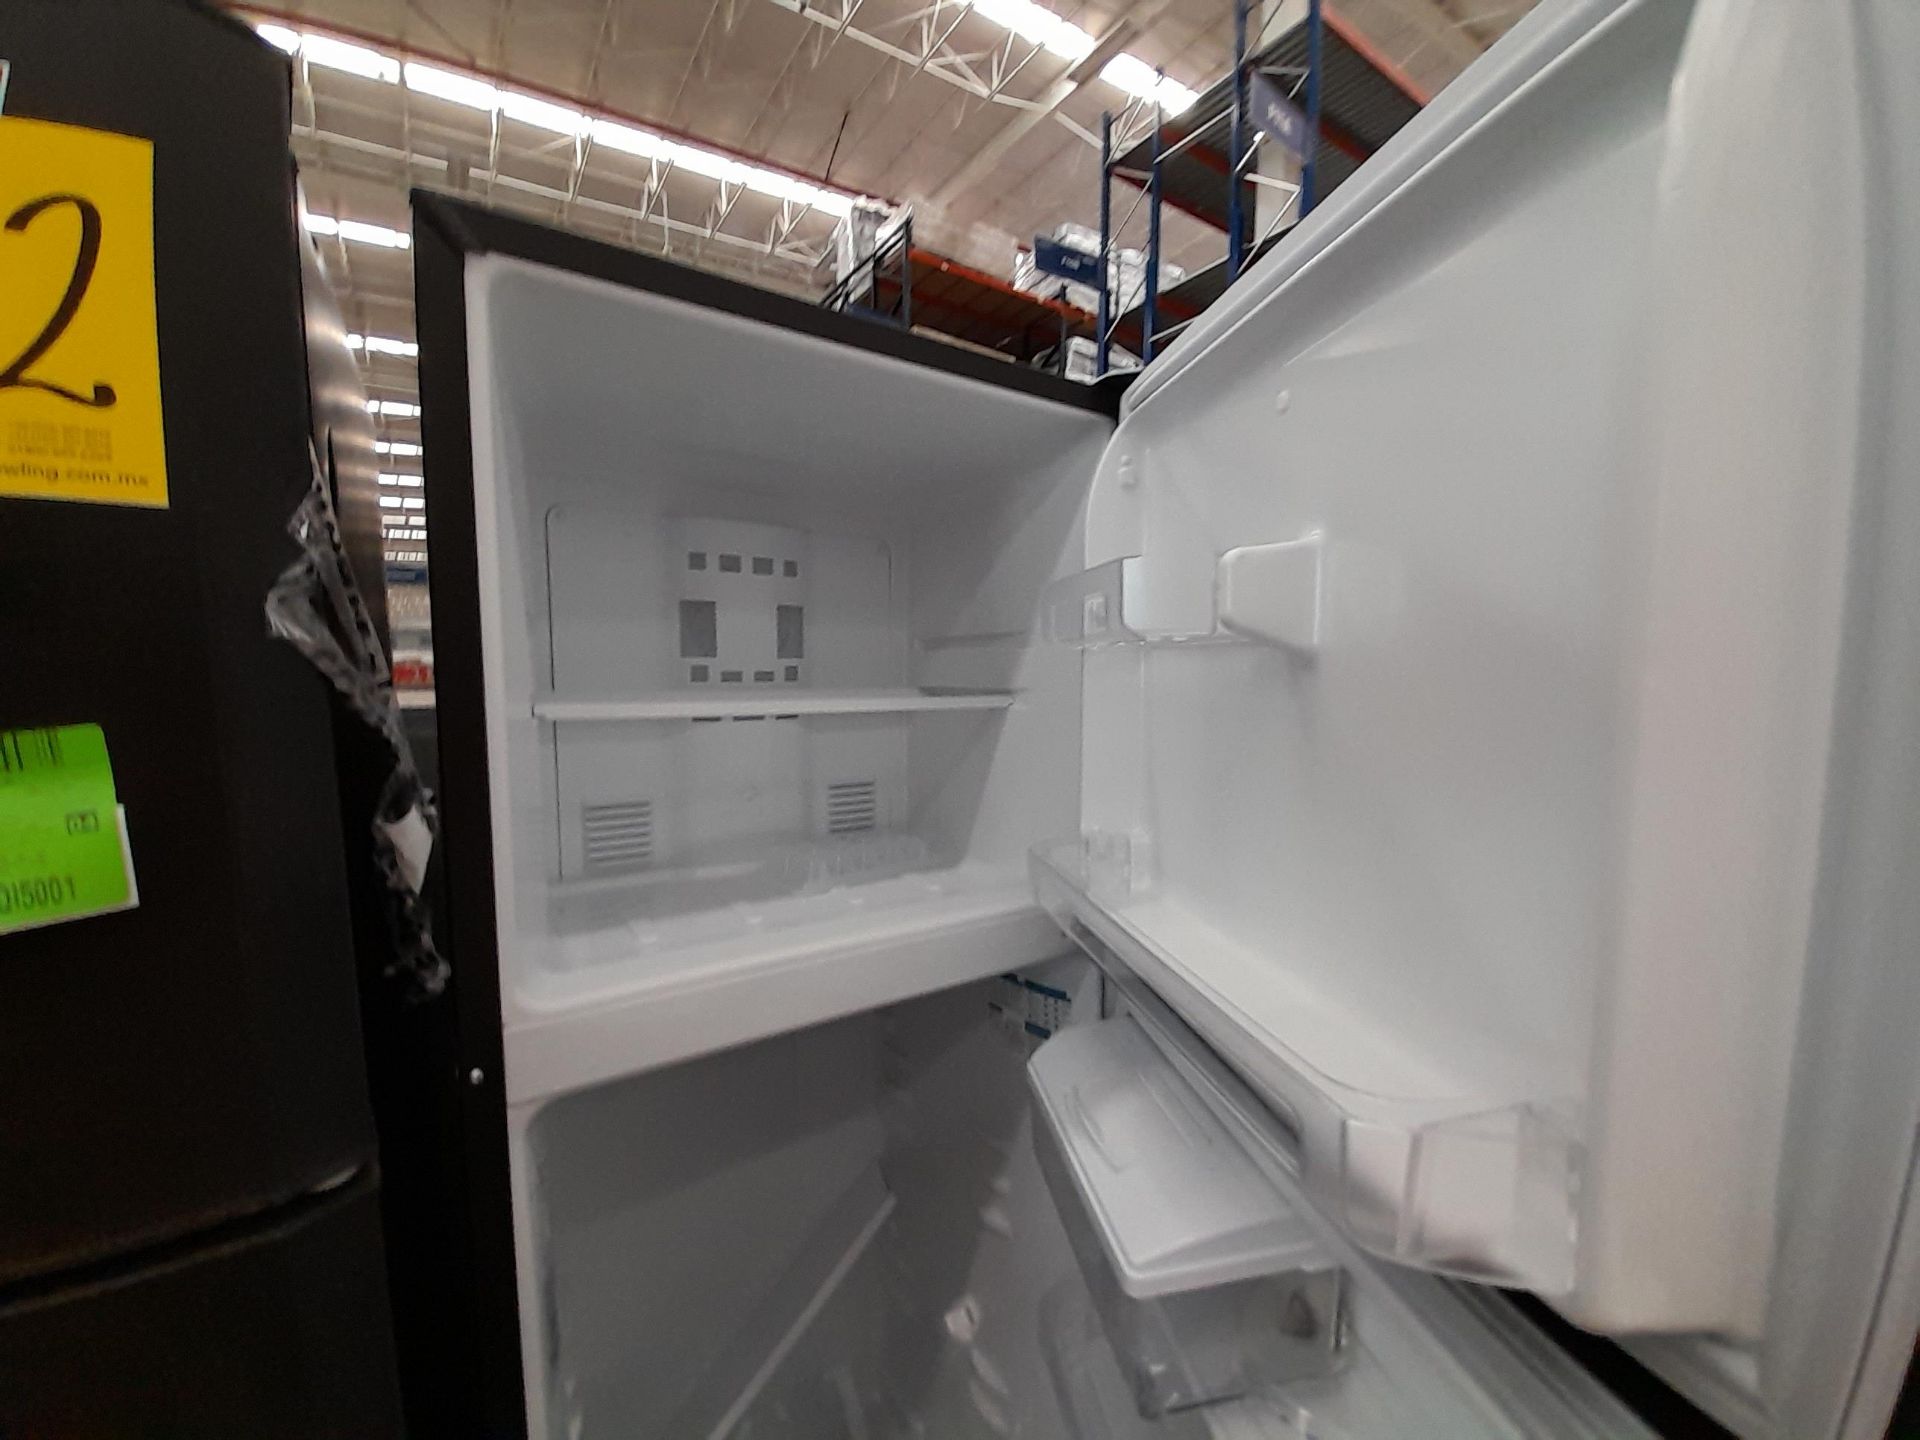 Lote de 2 Refrigeradores contiene: 1 Refrigerador con dispensador de agua Marca MABE, Modelo RMA300 - Image 6 of 8